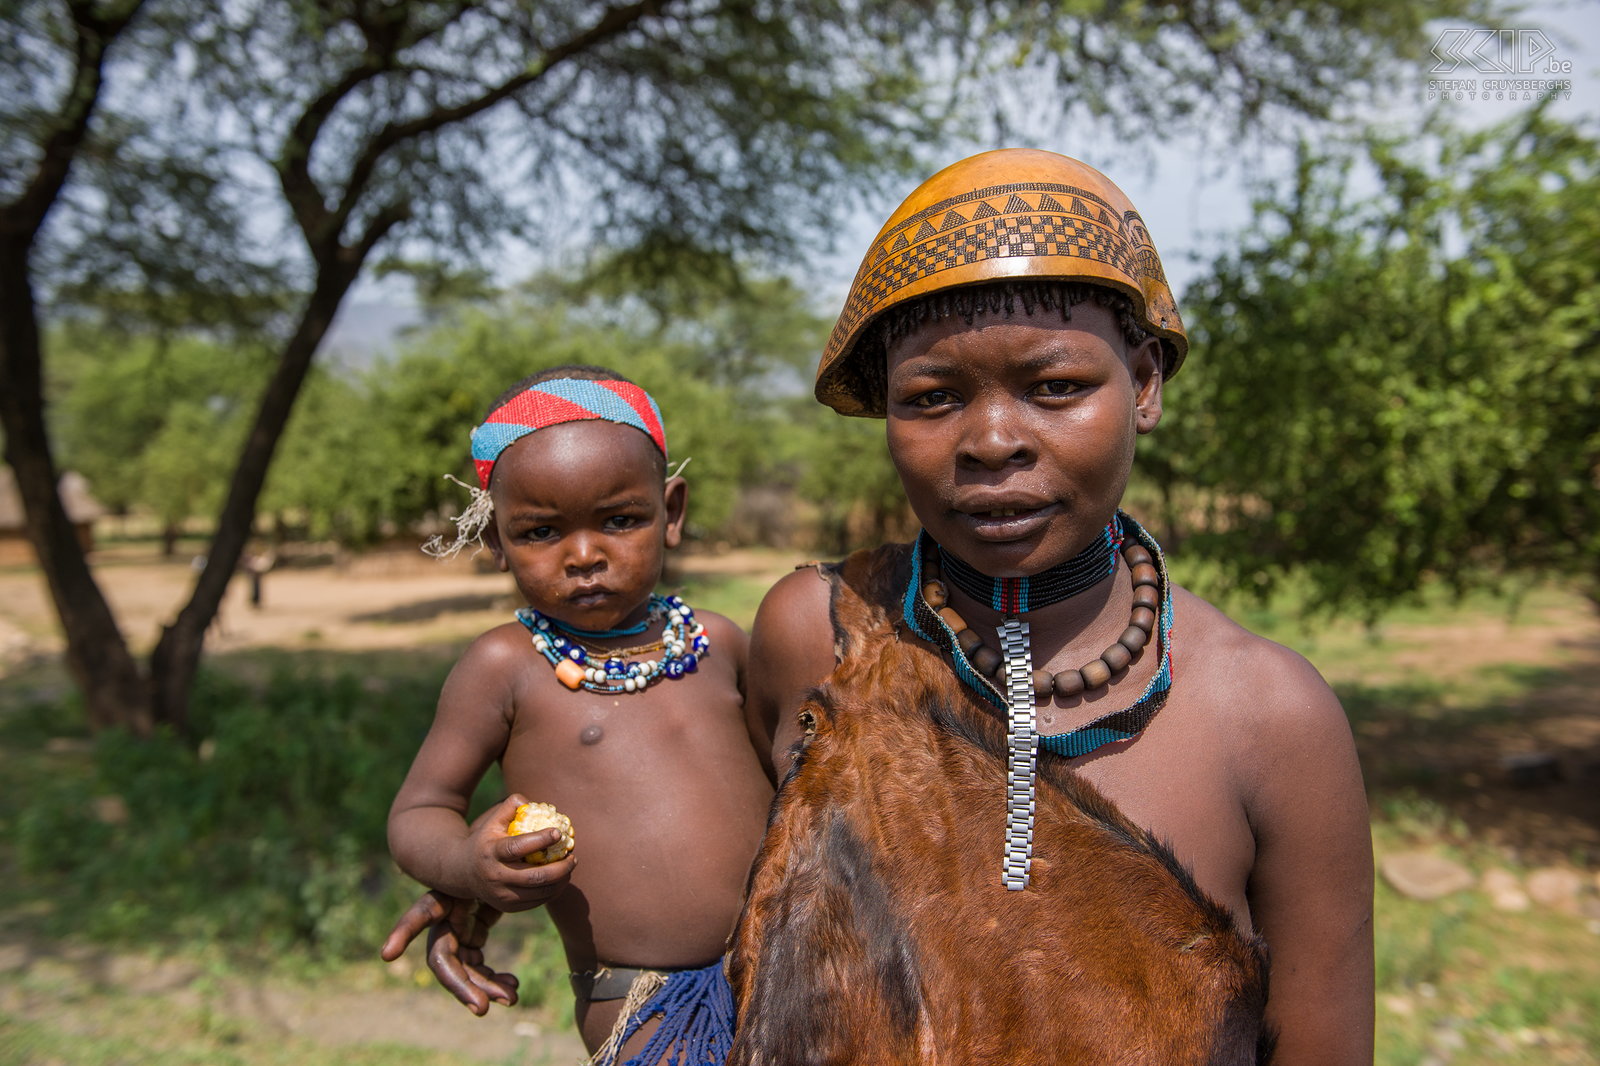 Weyto - Tsemay vrouw met kind We reden verder naar de Omo vallei, het gebied rondom de Omo rivier en het Mago NP in het zuiden van Ethiopië nabij de grenzen van Kenia en Soedan. Deze regio is het woongebied van een 20-tal etnische groepen zoals de Tsemai, Ari, Mursi, Hamer, Surma, Dassanech, Karo, Nyangatom, Banna, Arebore, ... die allen nog eigen tradities, ceremonies en unieke lichaams-versieringen kennen. Littekenpatronen, lichaamsbeschilderingen, arm- en enkelbanden, ingenieuze vlechtkapsels, kralen en lipschotels, ... het zijn allen eeuwenoude kunstzinnige uitingen. <br />
<br />
De eerste stam waarvan we een dorpje bezoeken zijn de Tsemai/Tsemay/Tsamai in de buurt van het stadje Weyto. Het zijn landbouwers en veehouders die ook bijenkorven ophangen voor honingproductie. Veel Tsemai vrouwen dragen kleding gemaakt van leder en soms ook een kalebas als hoofddeksel. Stefan Cruysberghs